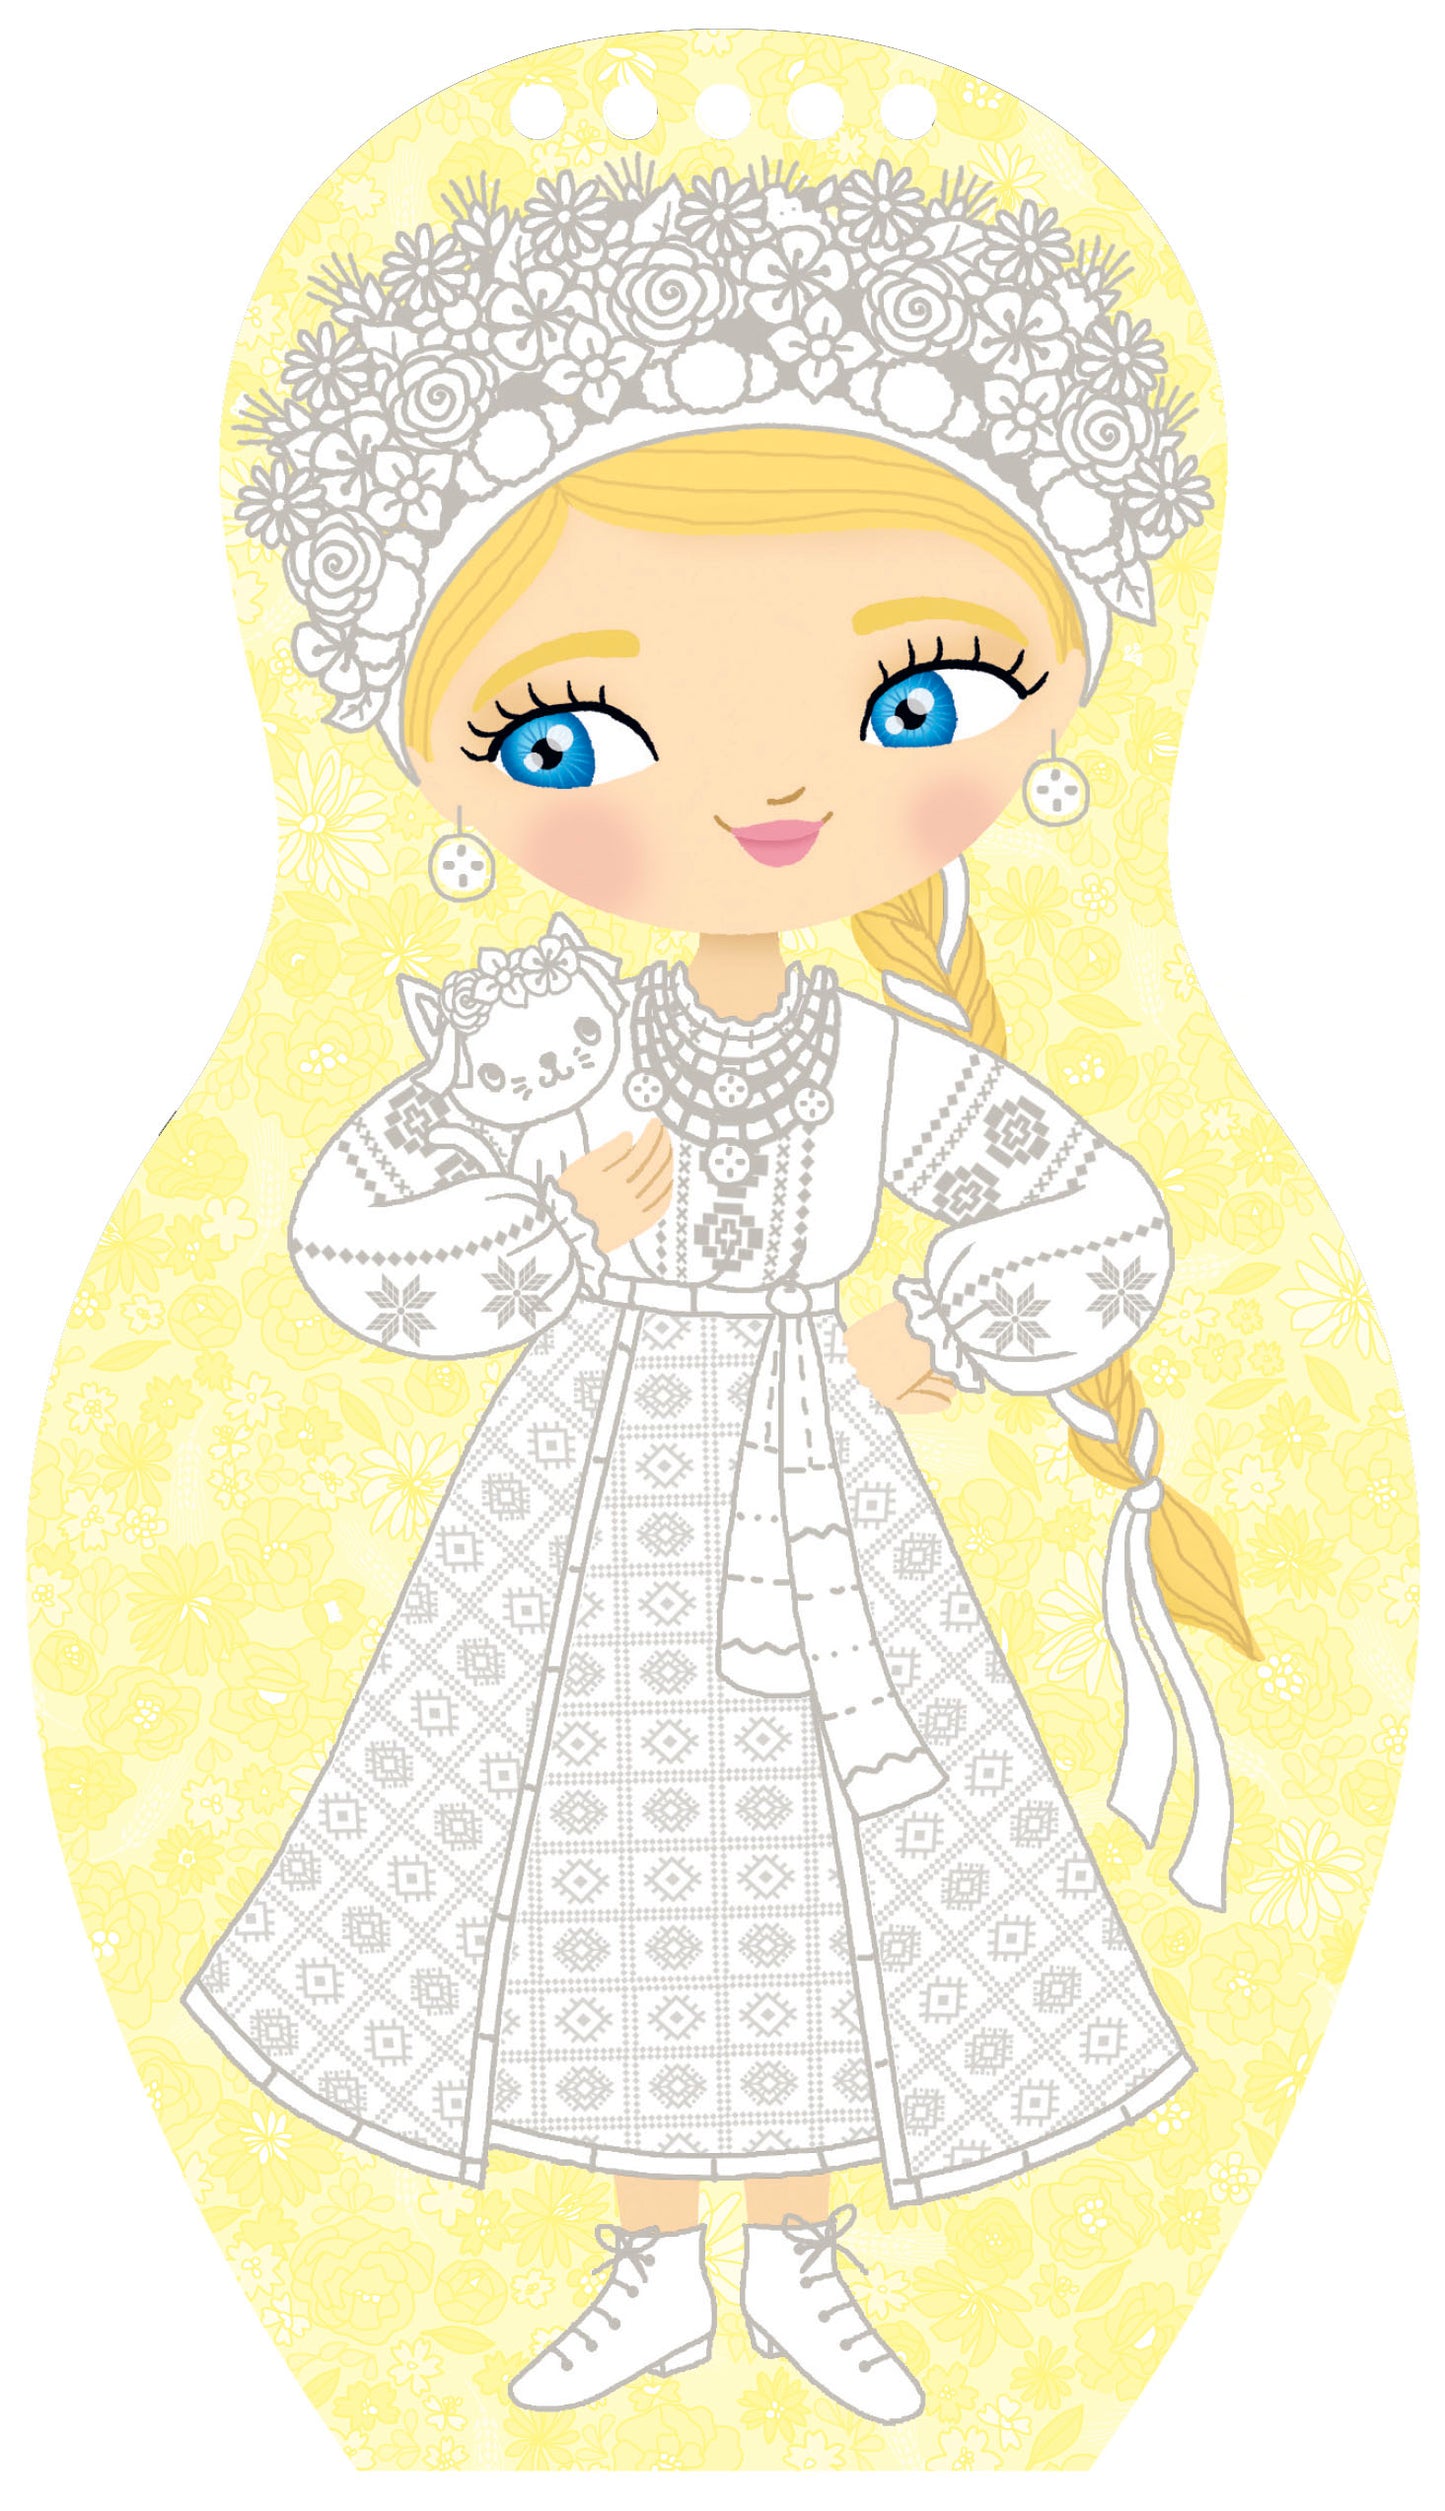 Obliekame ukrajinské bábiky ALINA – Maľovanky